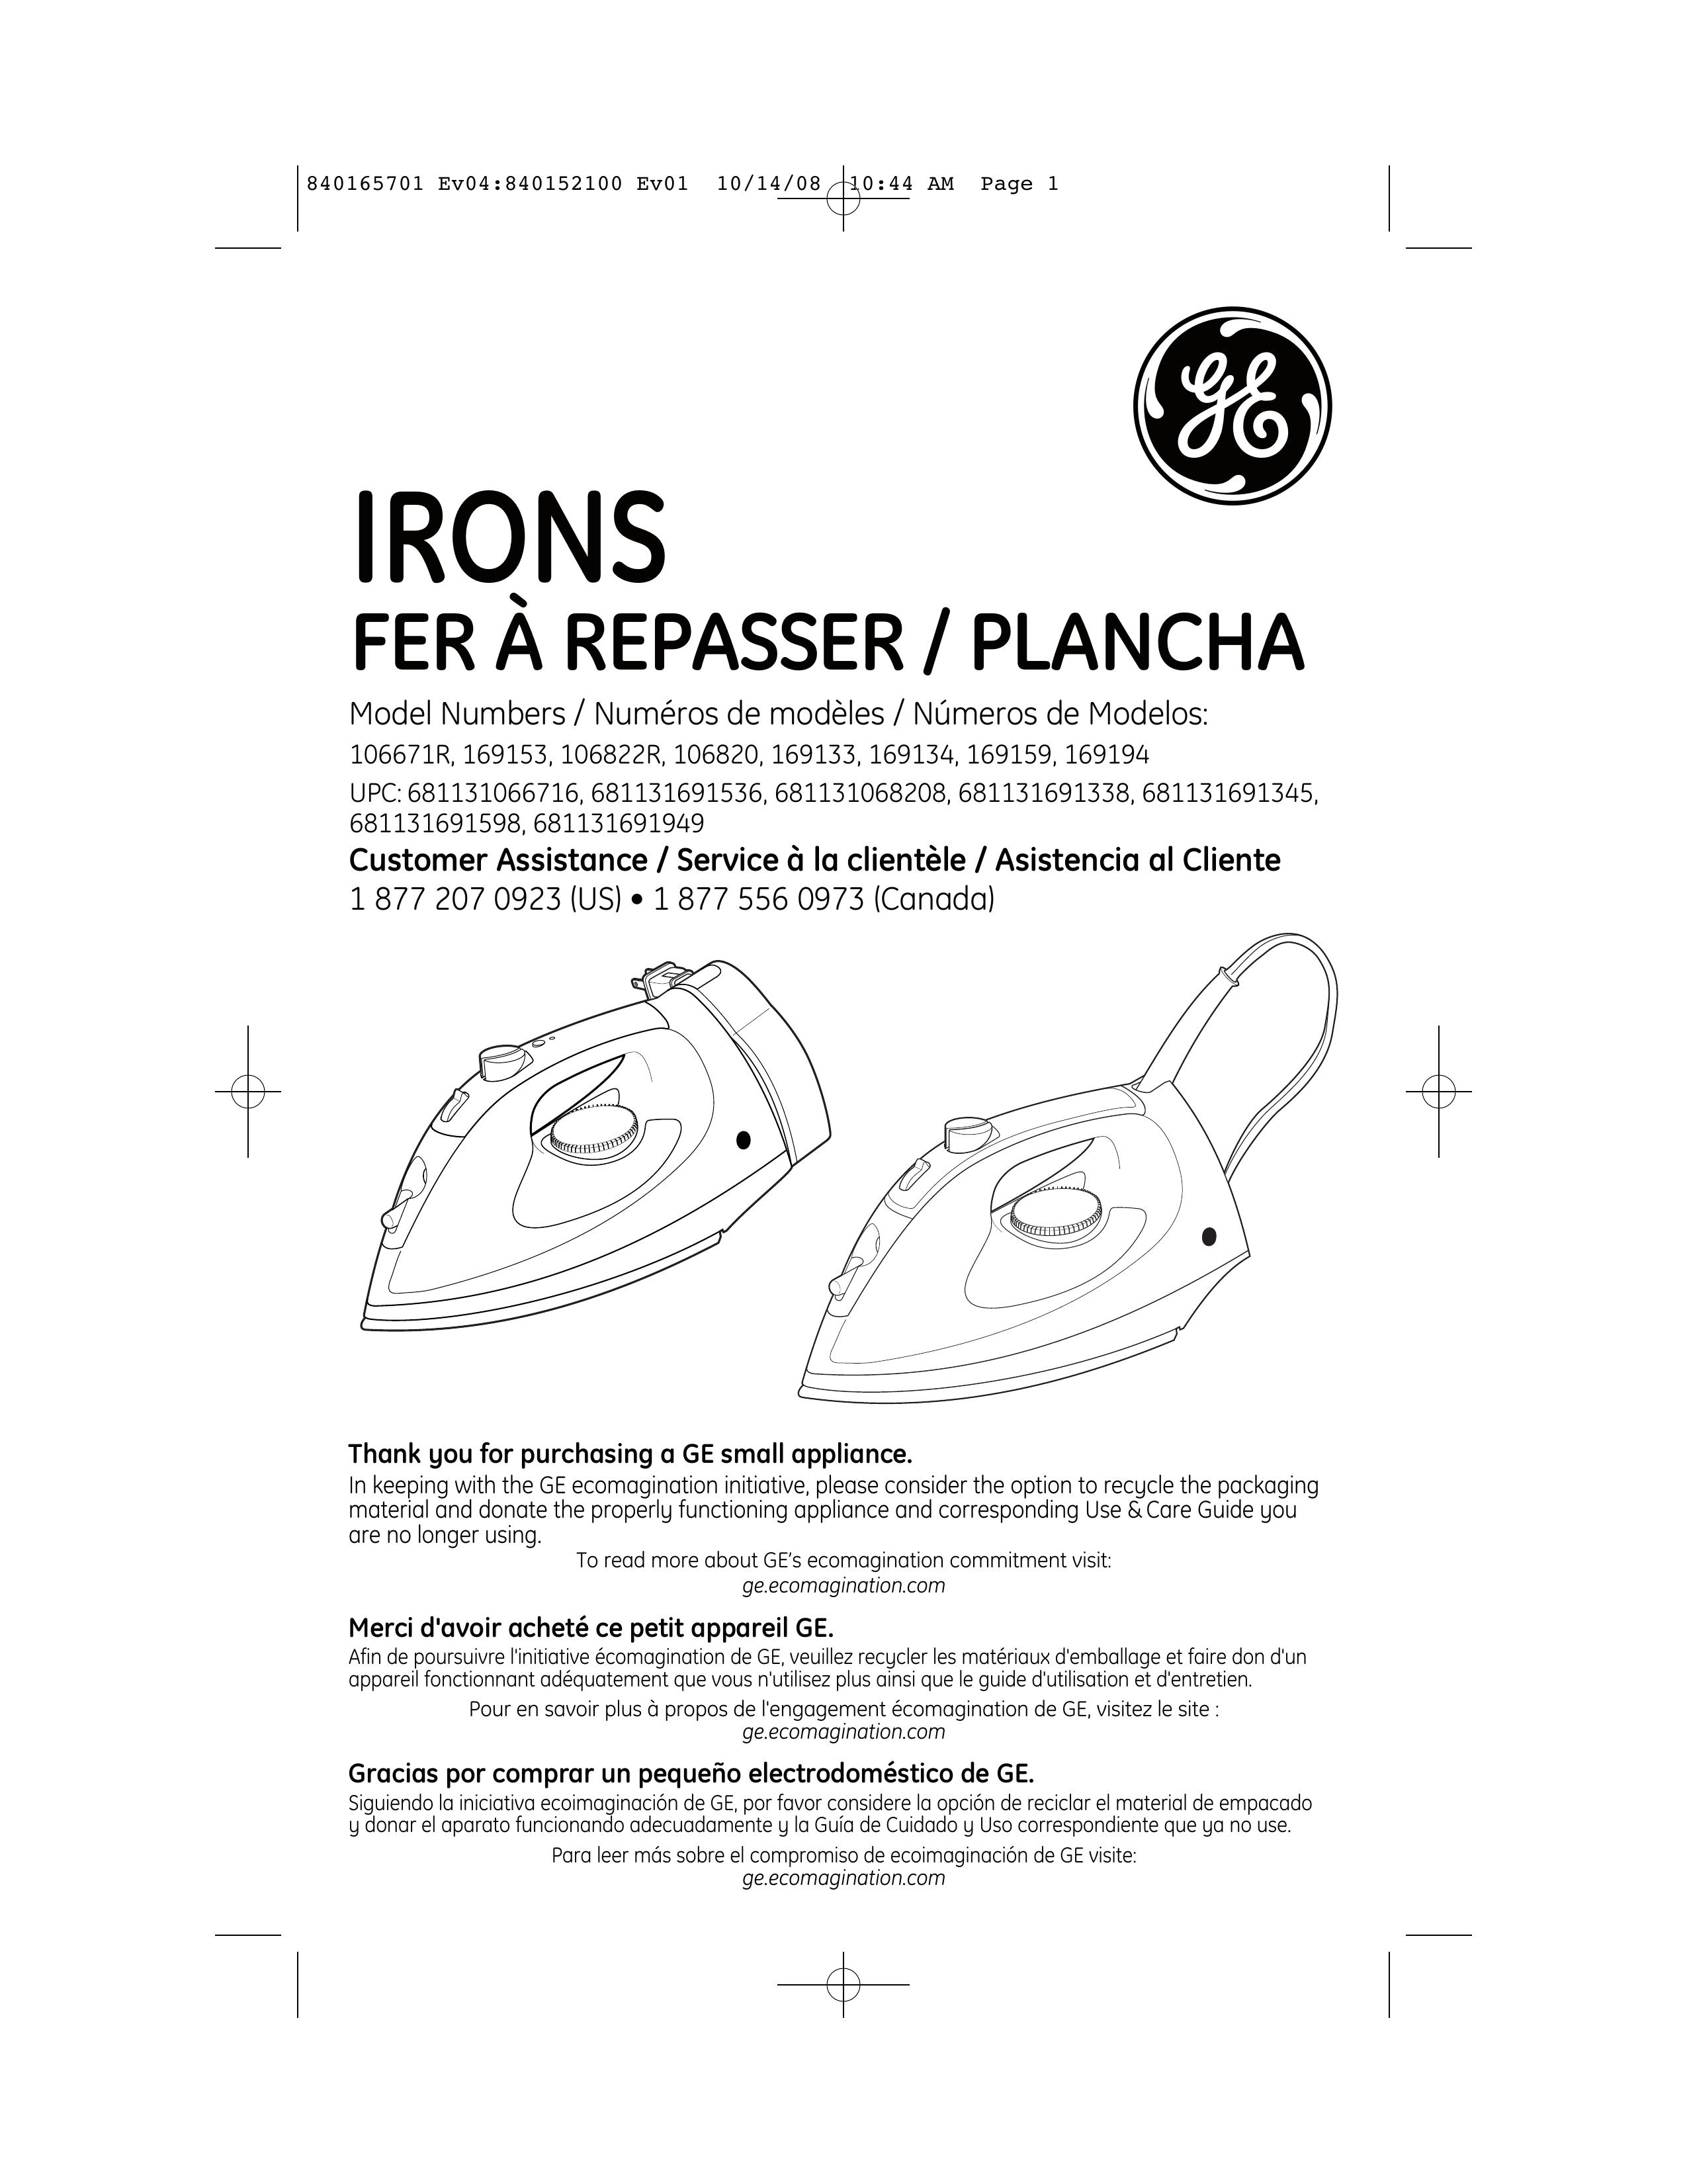 GE 681131691338 Iron User Manual